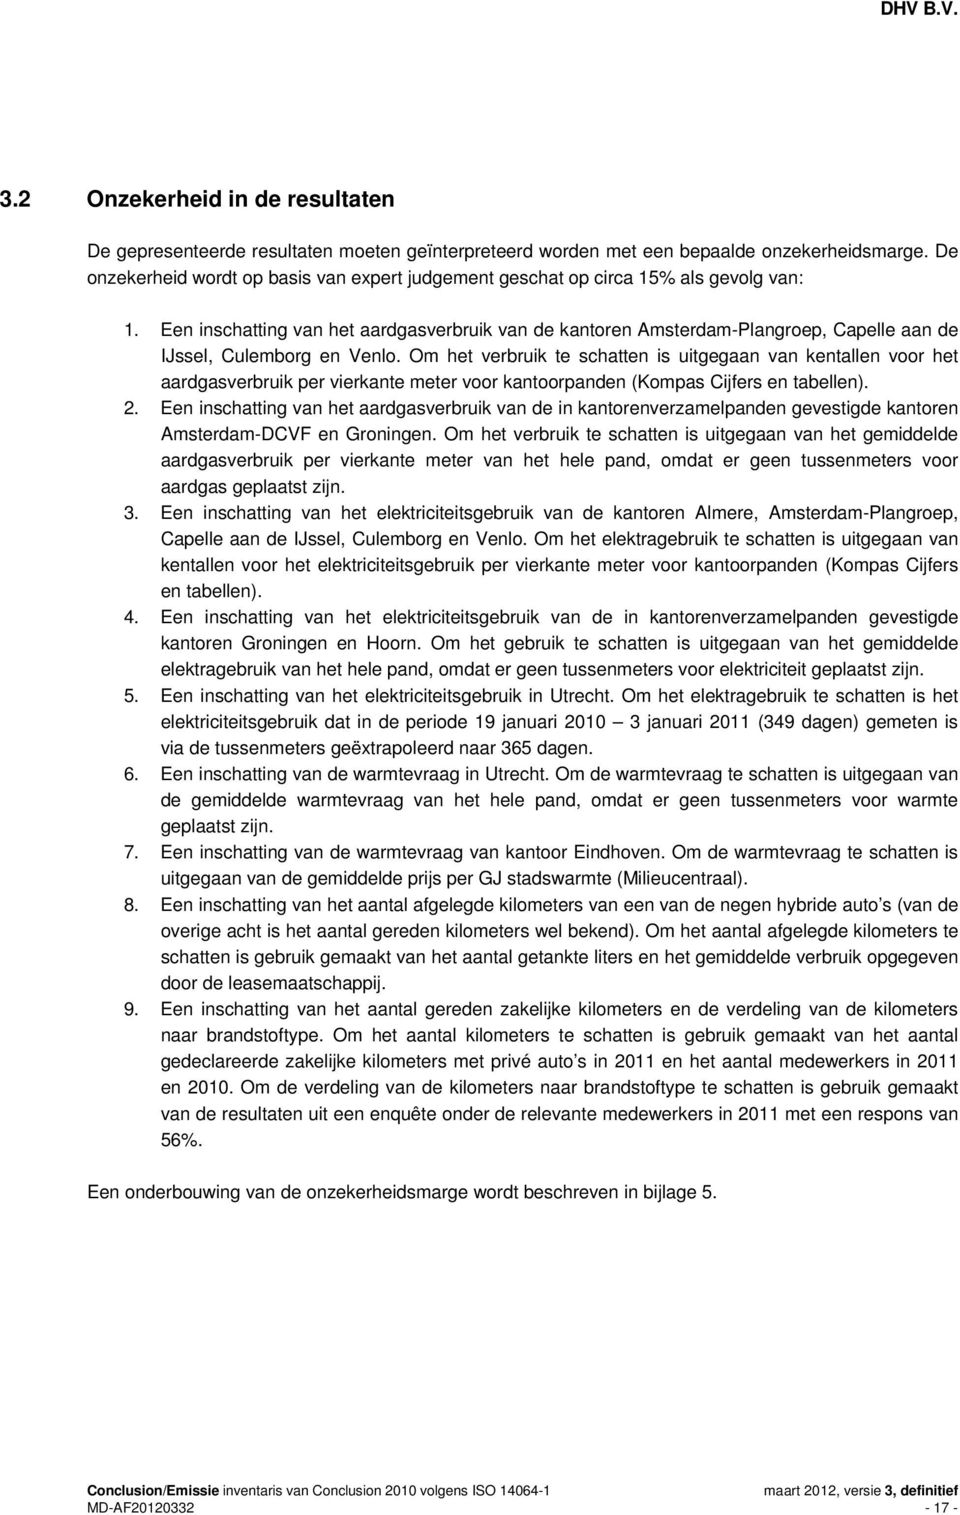 Een inschatting van het aardgasverbruik van de kantoren Amsterdam-Plangroep, Capelle aan de IJssel, Culemborg en Venlo.